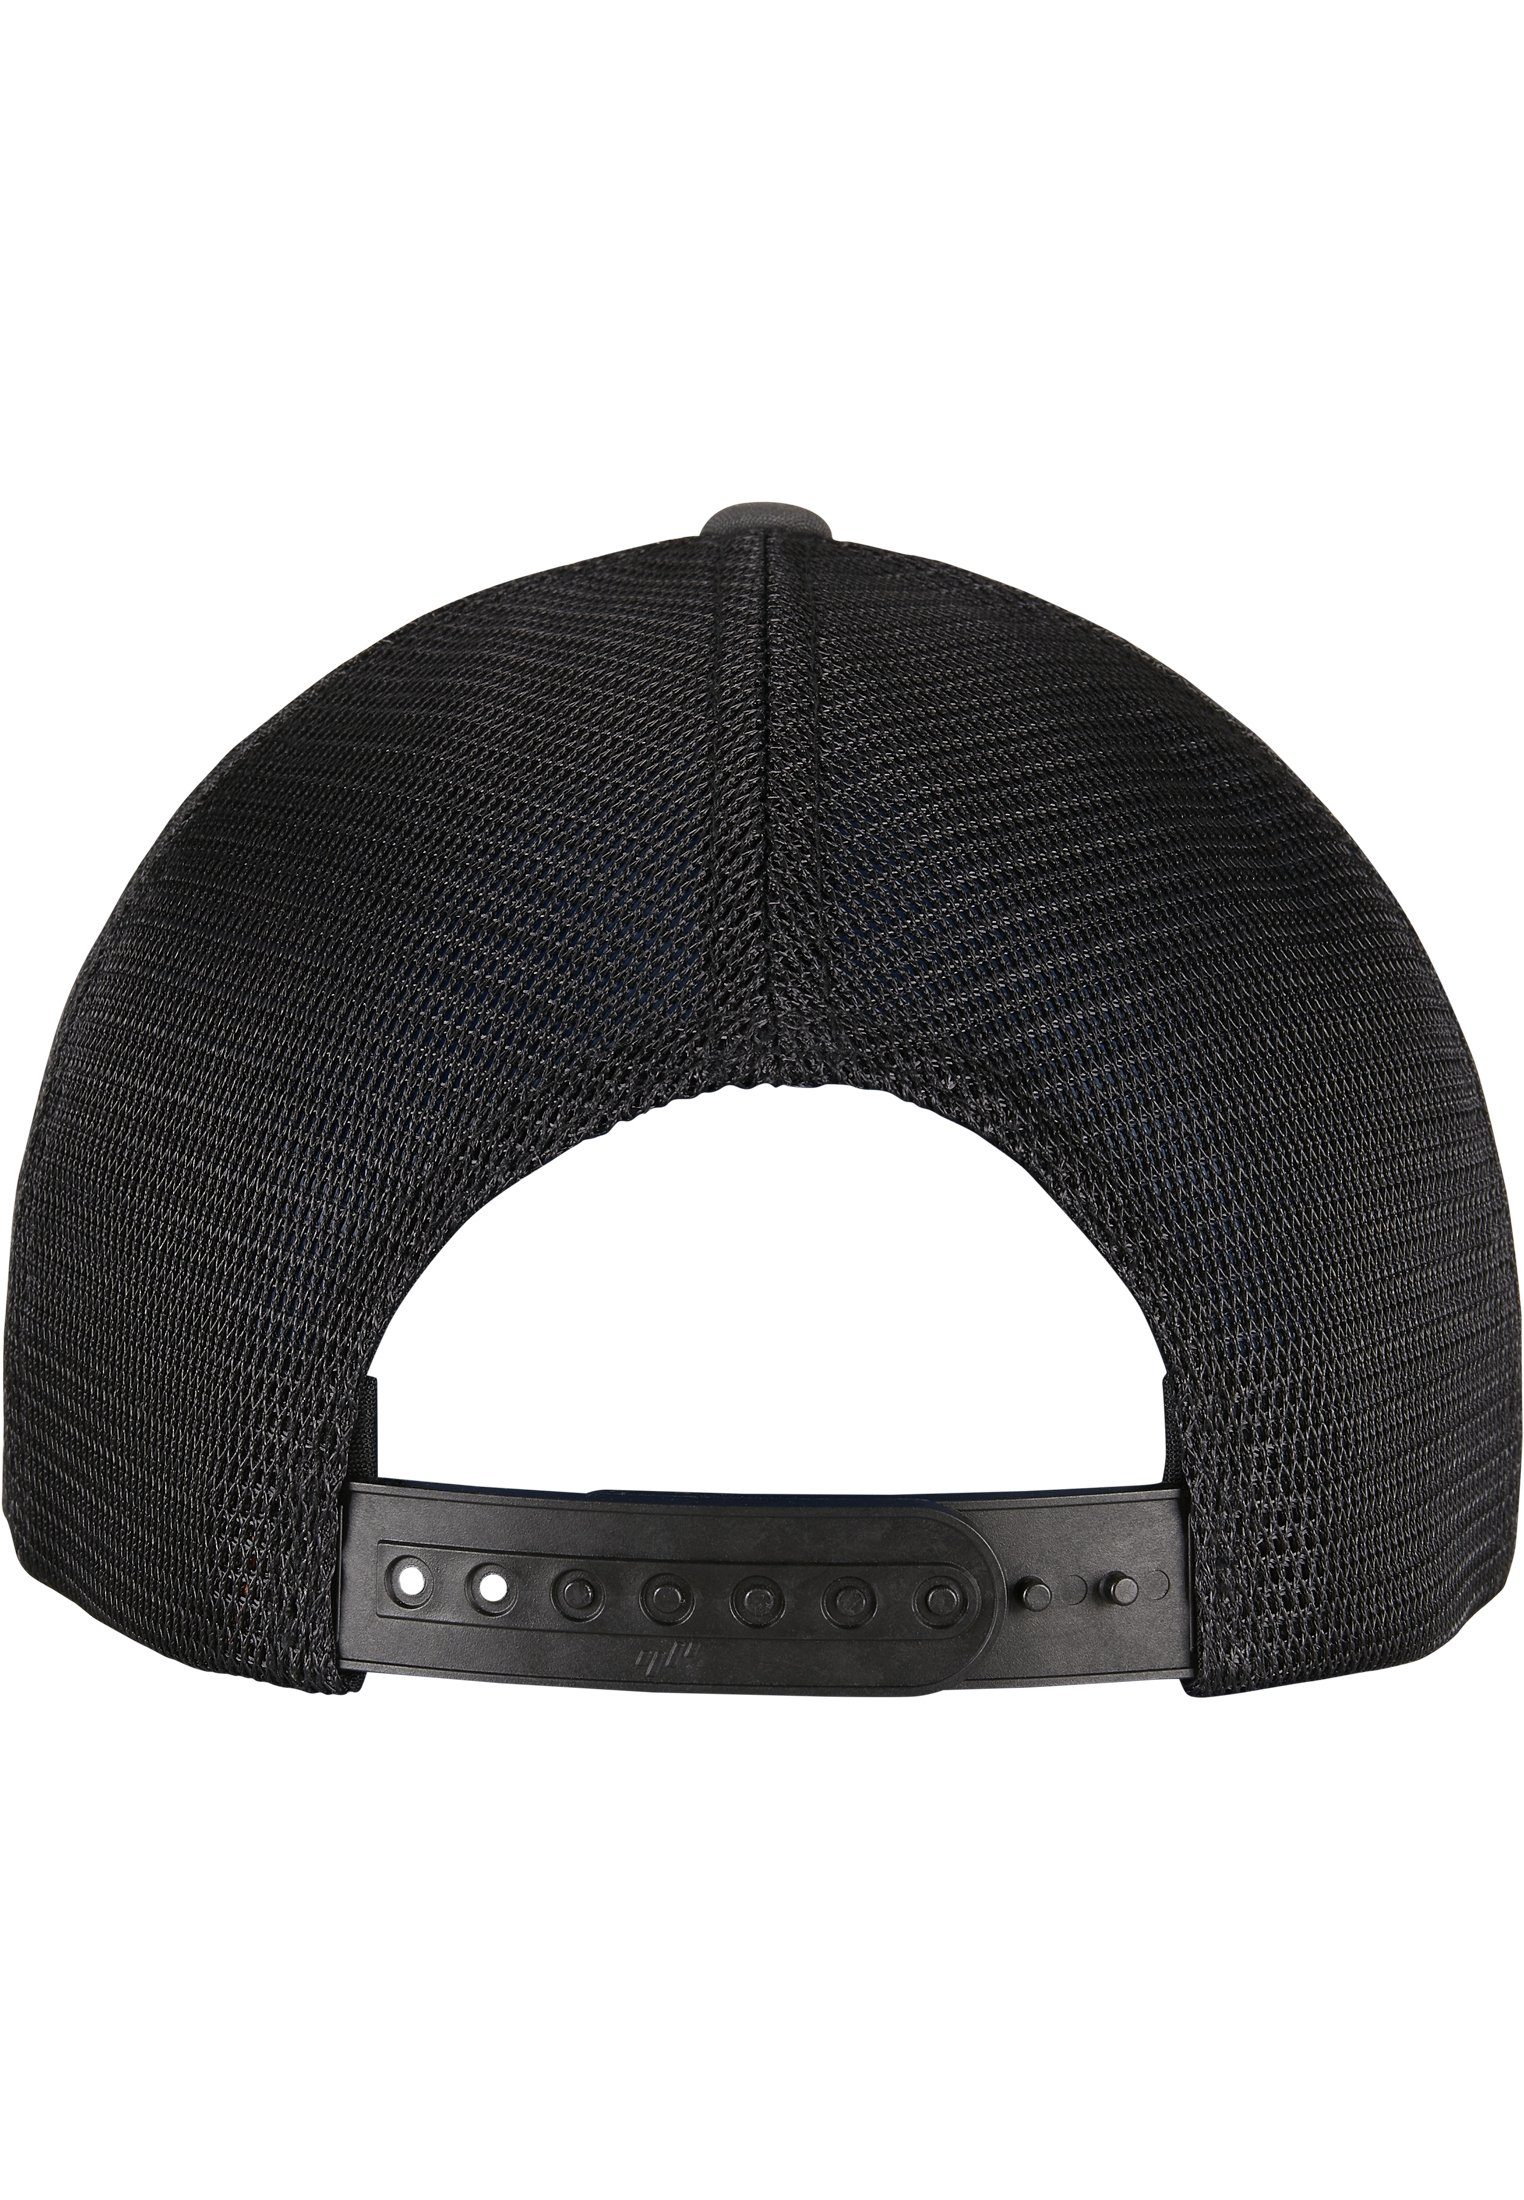 Omnimesh Accessoires 2-Tone Cap Flexfit charcoal/black Cap 360° Flex